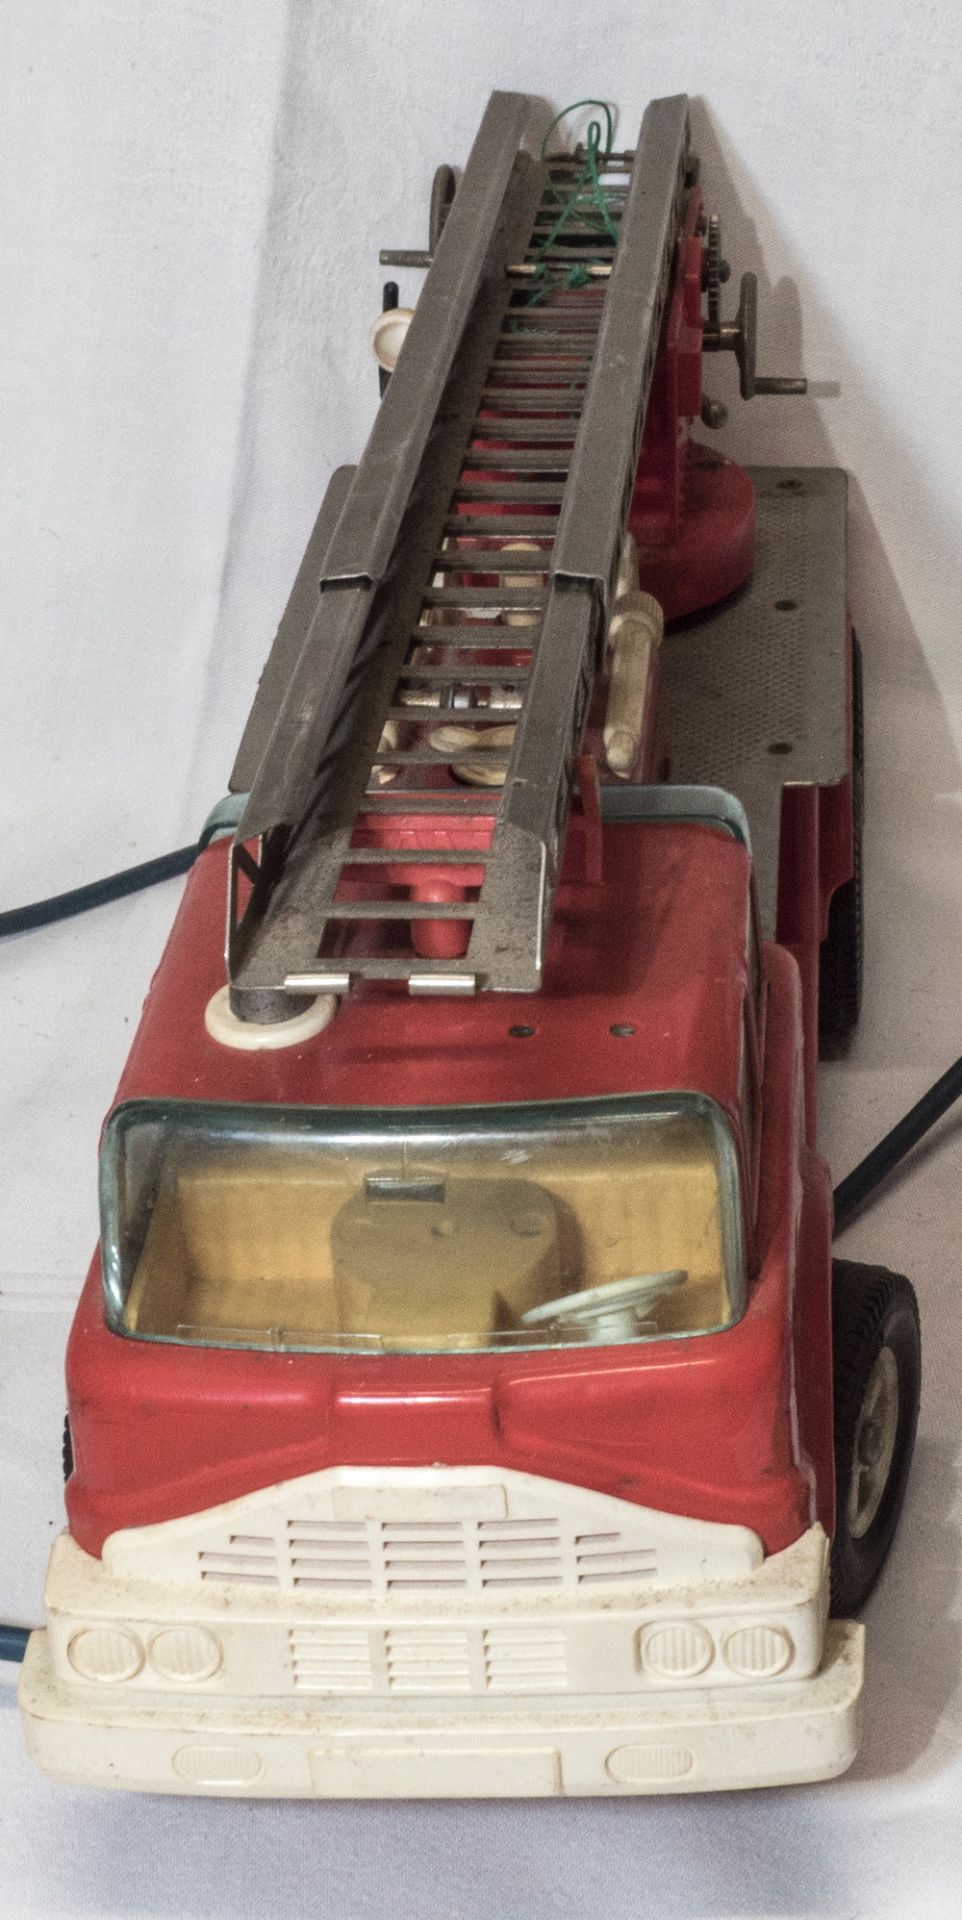 Gama Feuerwehrauto mit Fernbedienung. Nicht komplett. Länge: ca. 32 cm. Funktion nicht geprüft. - Image 2 of 5